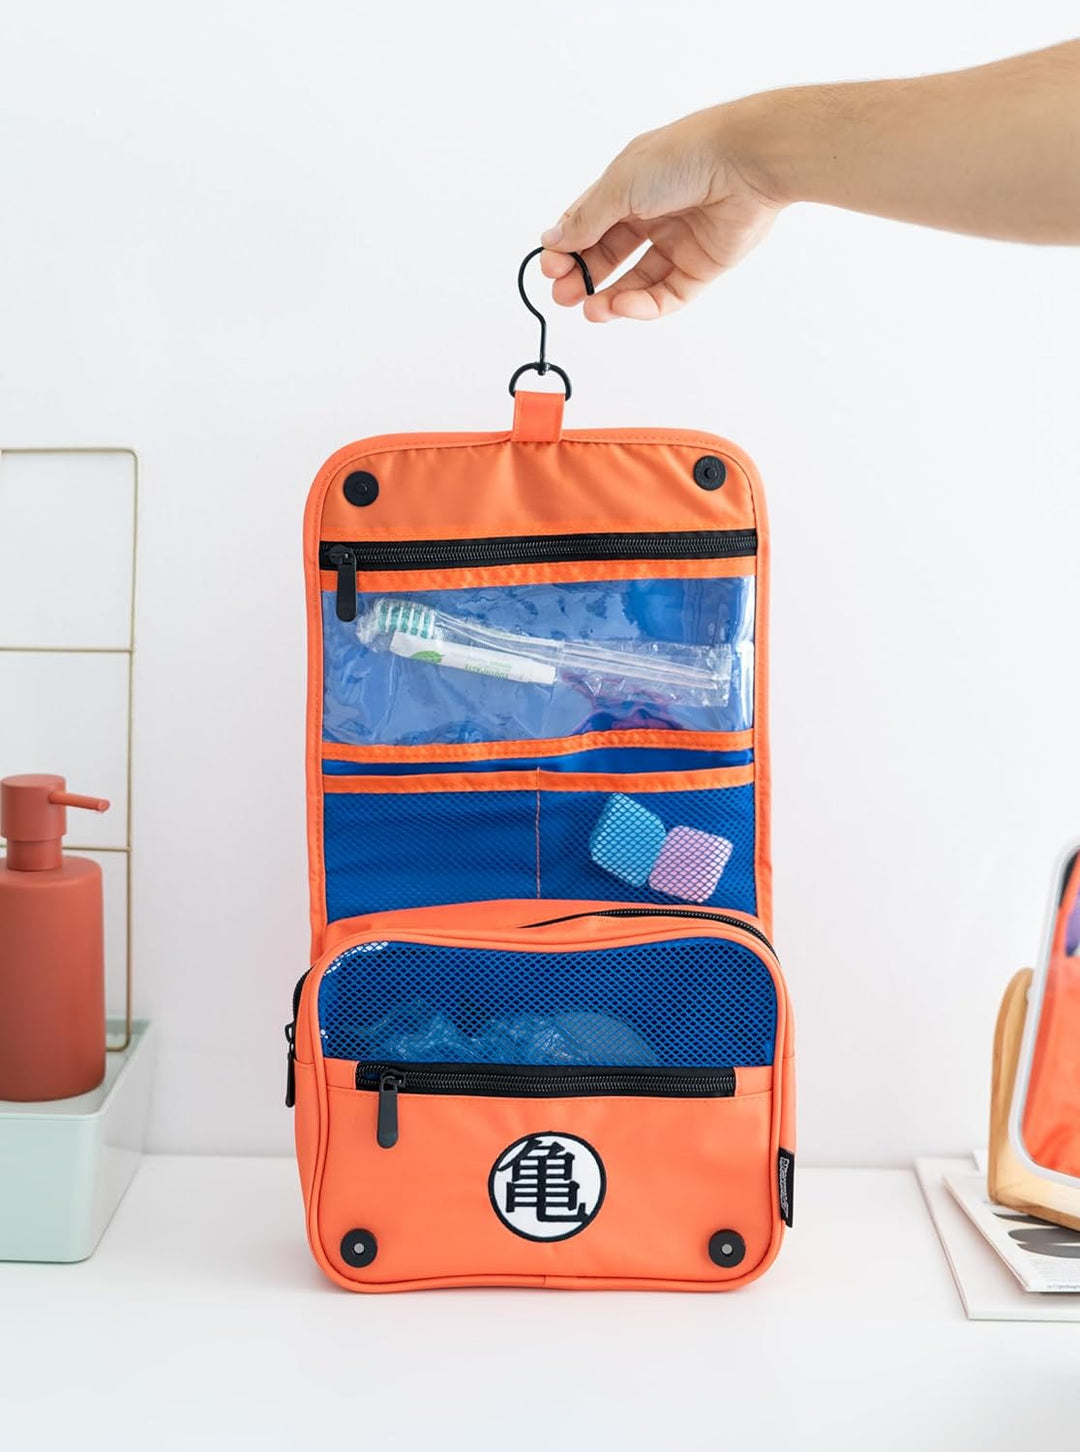 Grupo Erik Dragon Ball Hanging Travel Toiletry Bag | Hanging Toiletry Bag With Hanging Hook